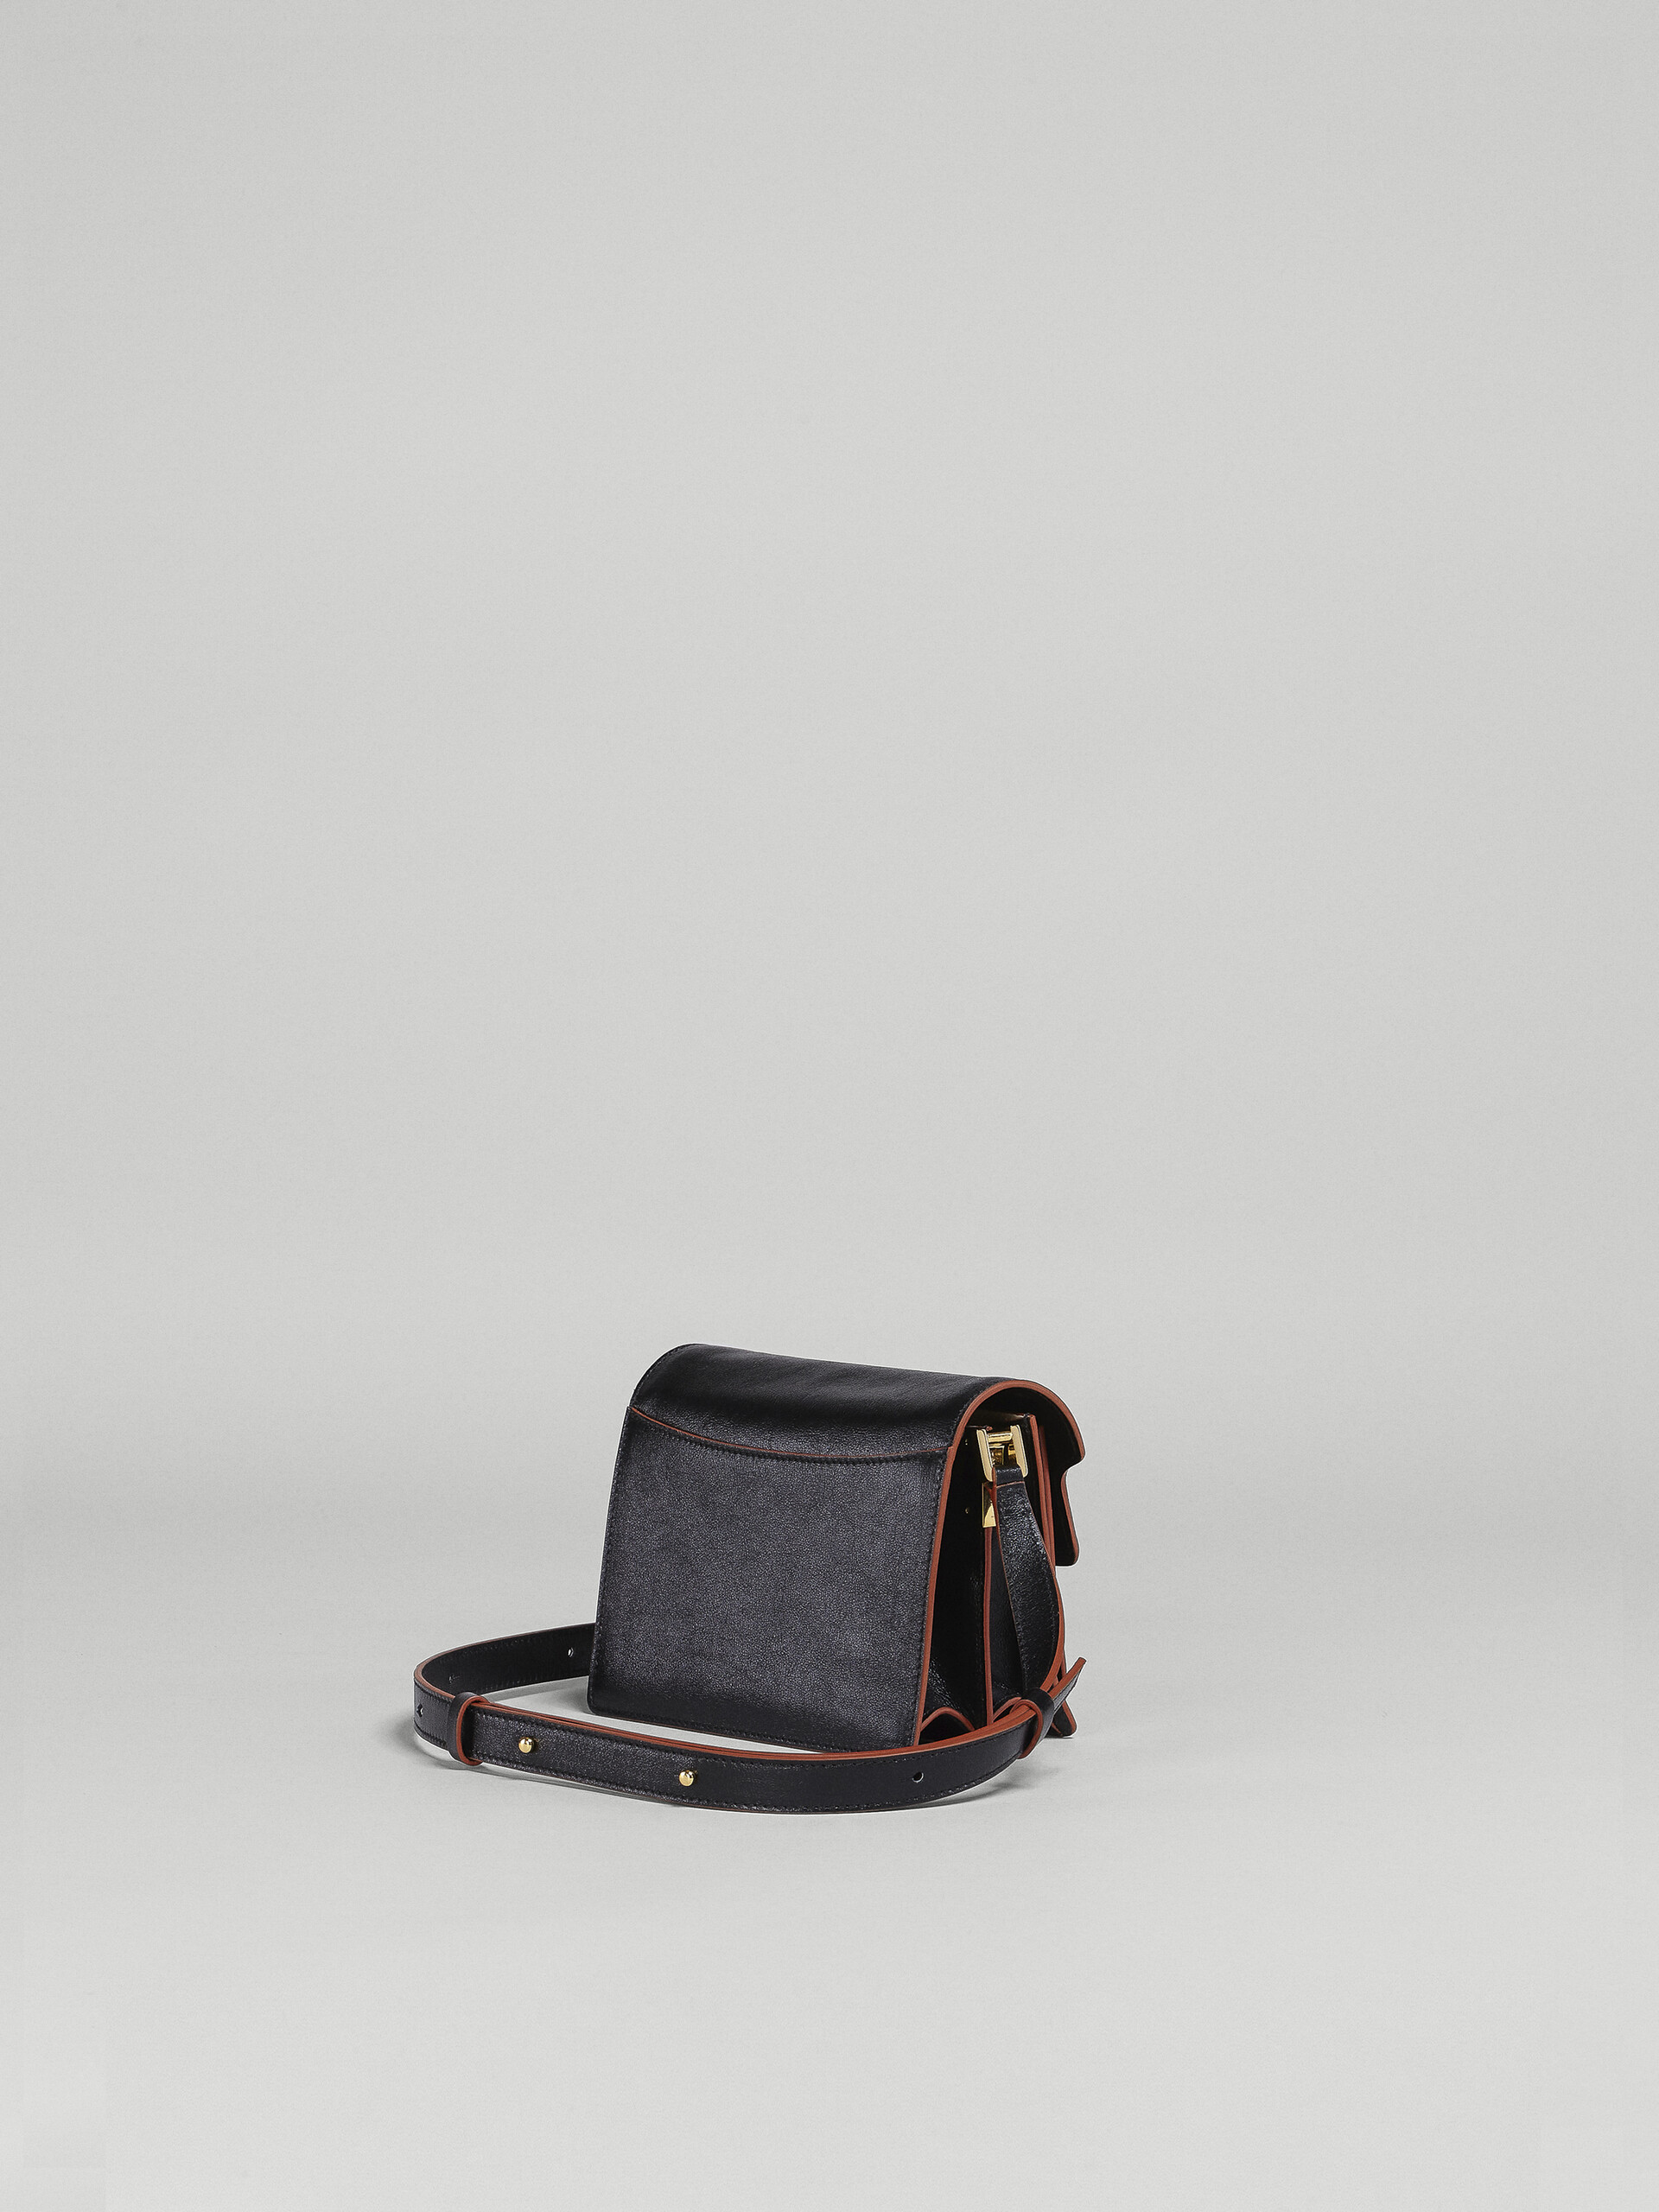 Trunk Soft Mini Bag in black leather - Shoulder Bag - Image 3